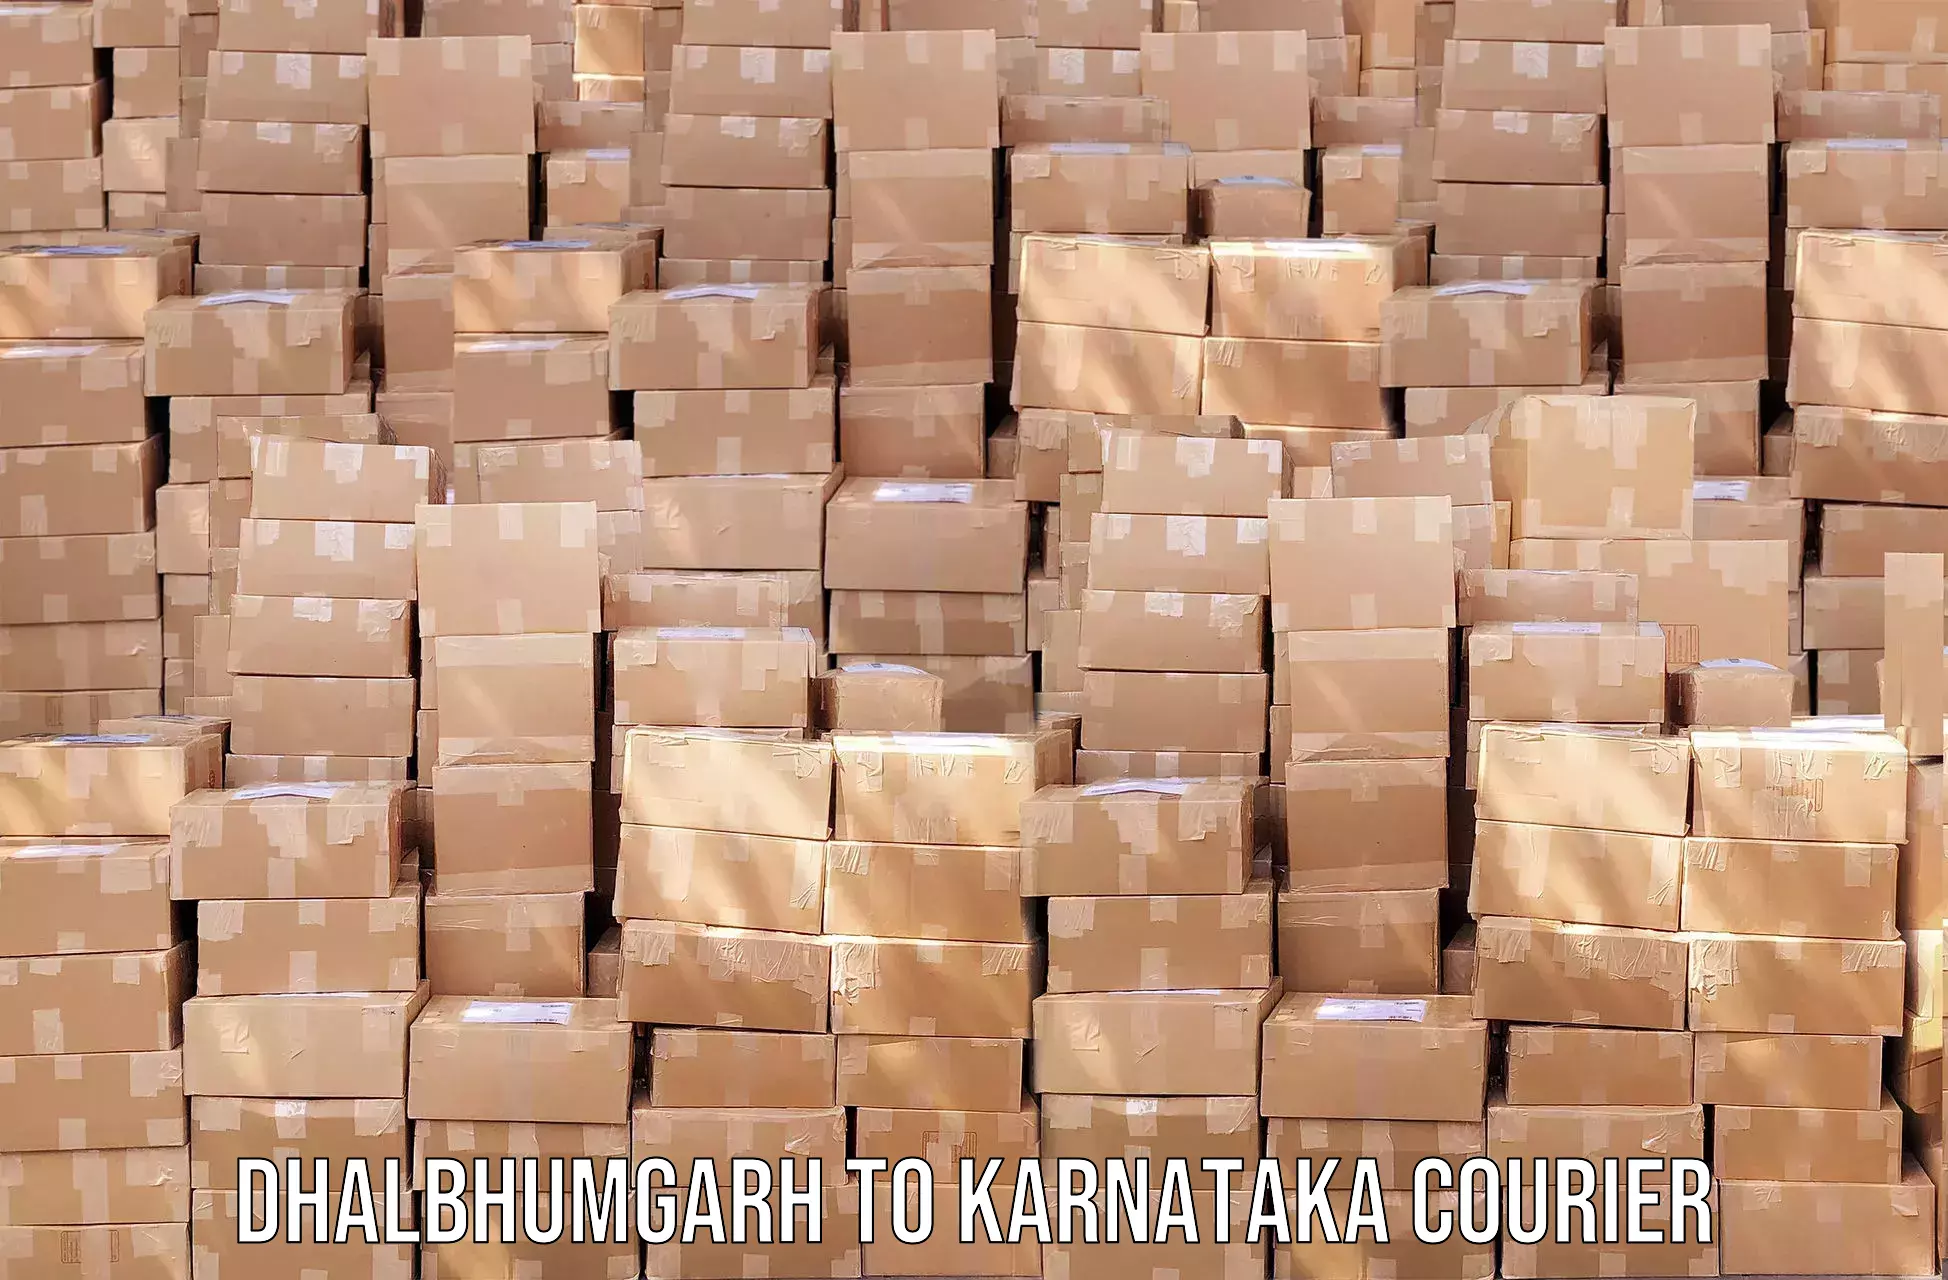 Comprehensive parcel tracking Dhalbhumgarh to Aland Kalaburagi